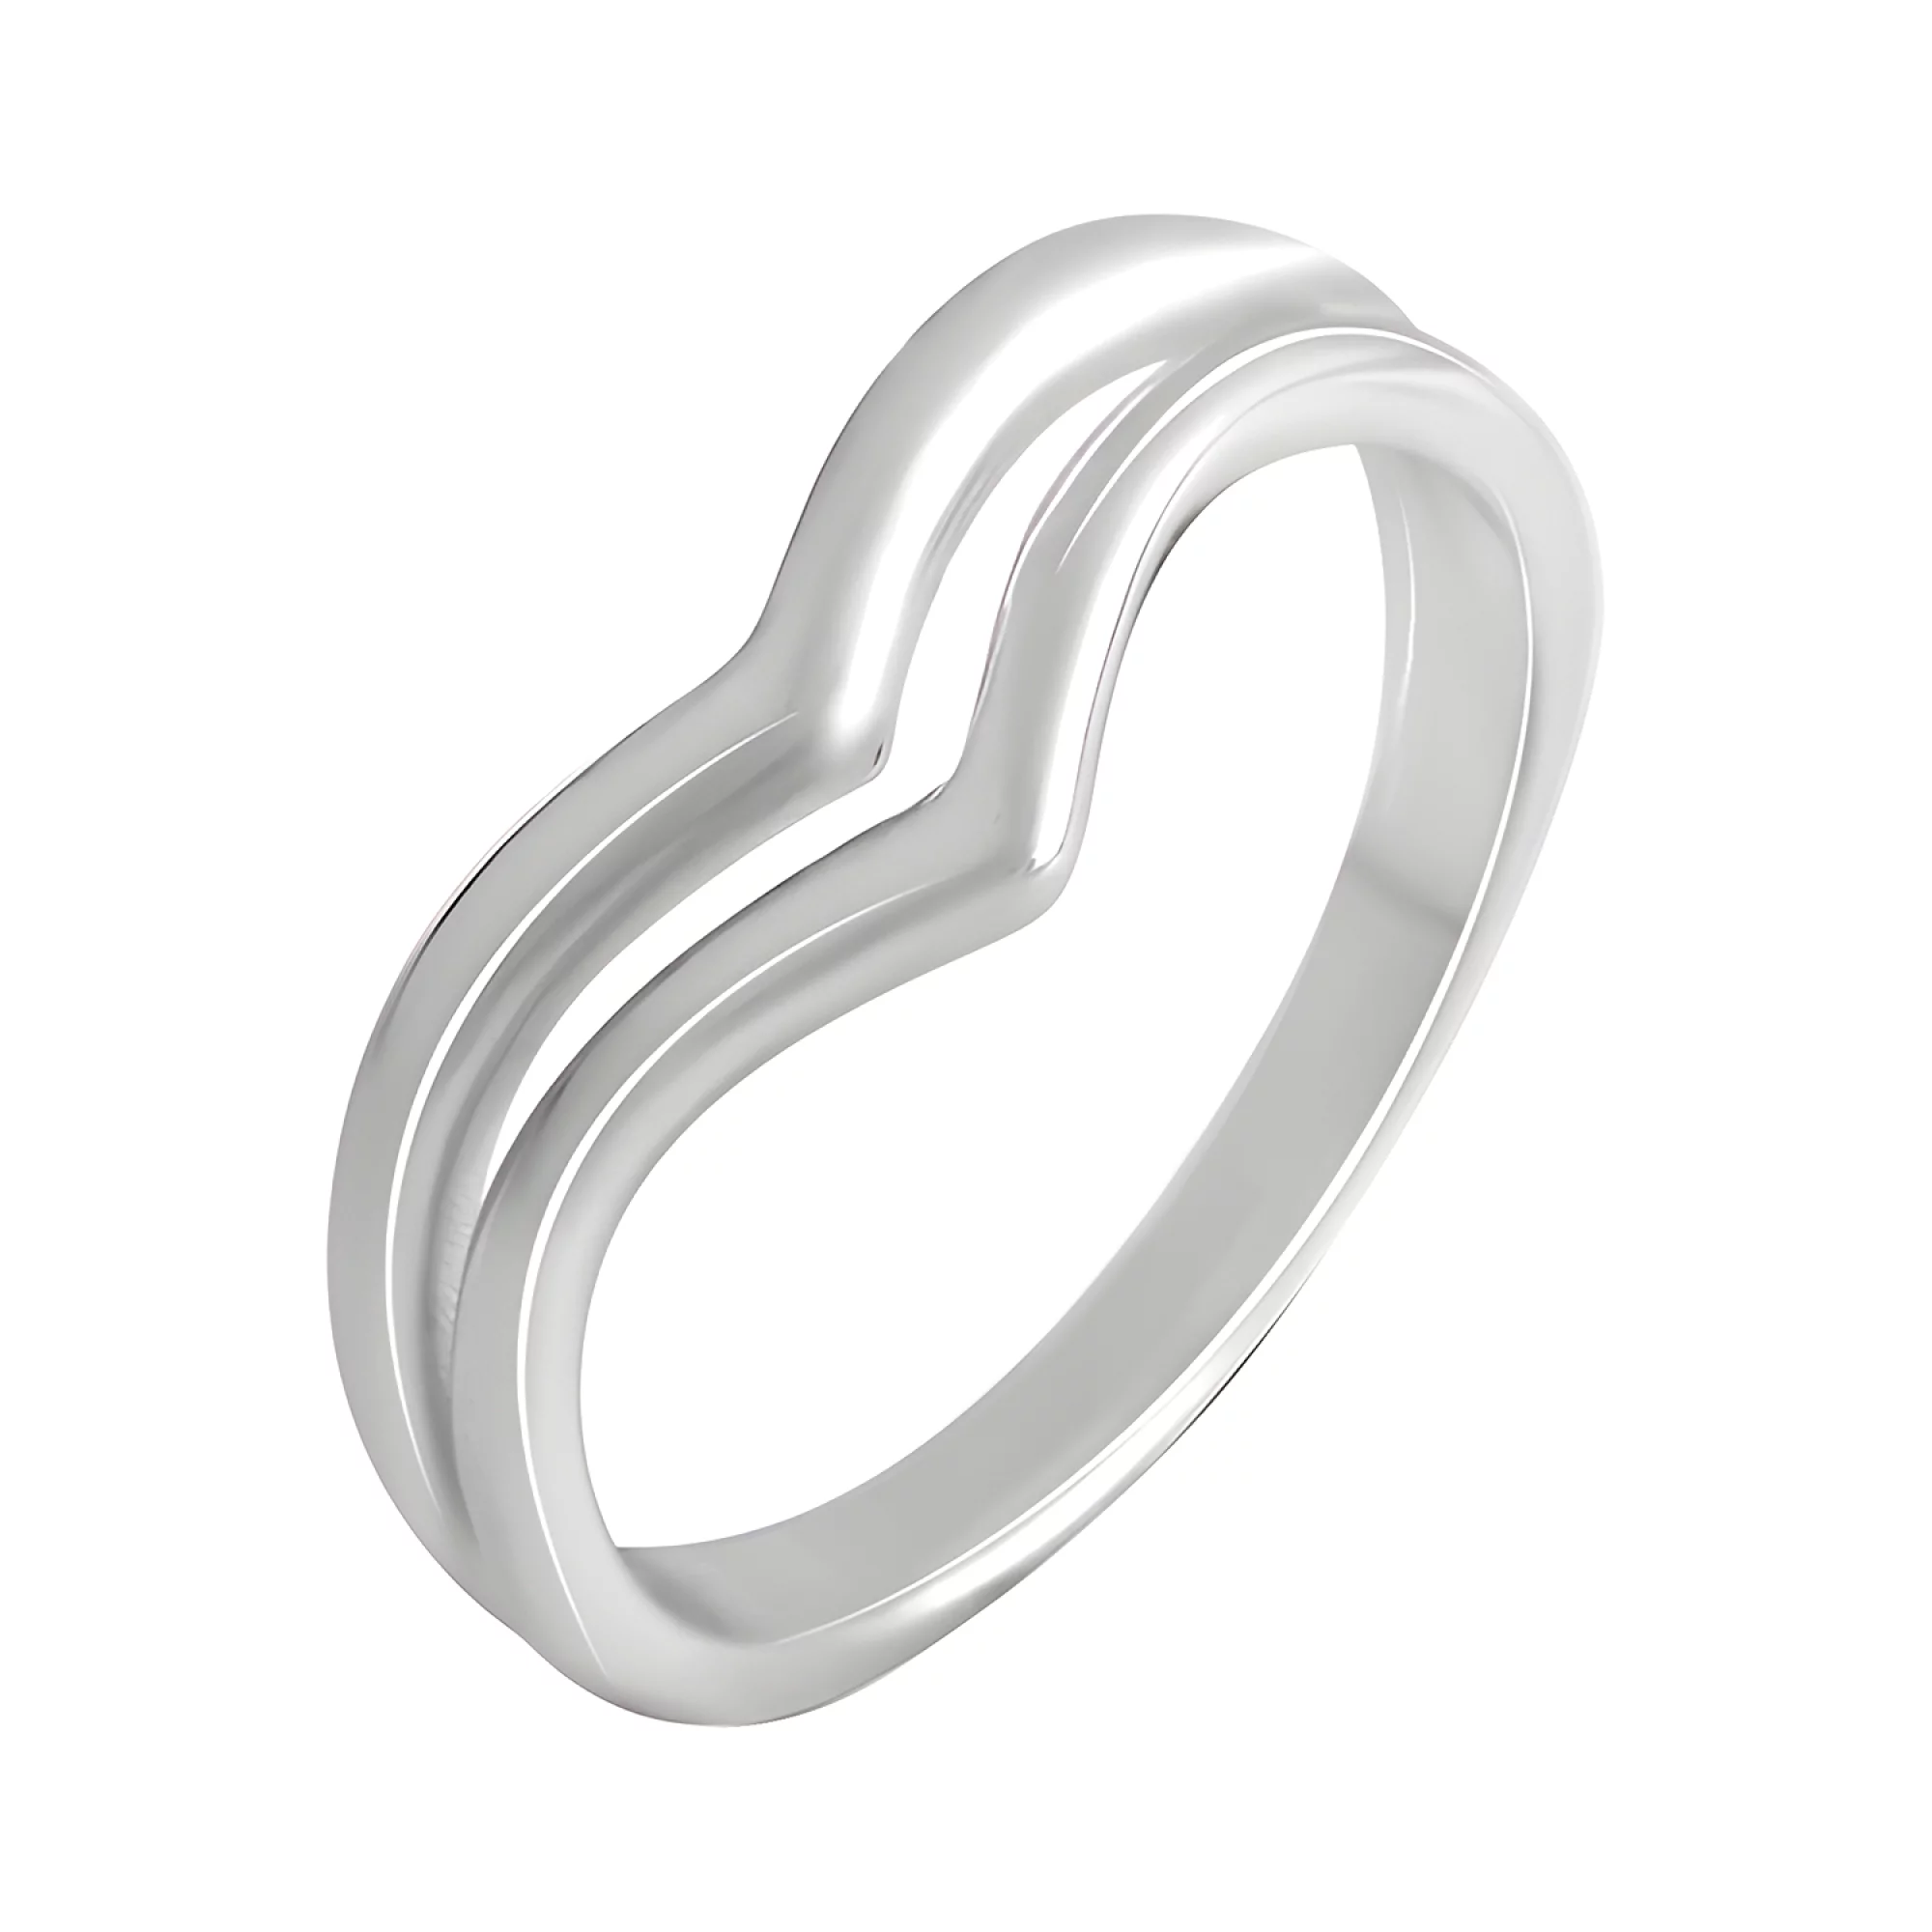 Двойное серебряное кольцо в минималистическом стиле - 1542845 – изображение 1